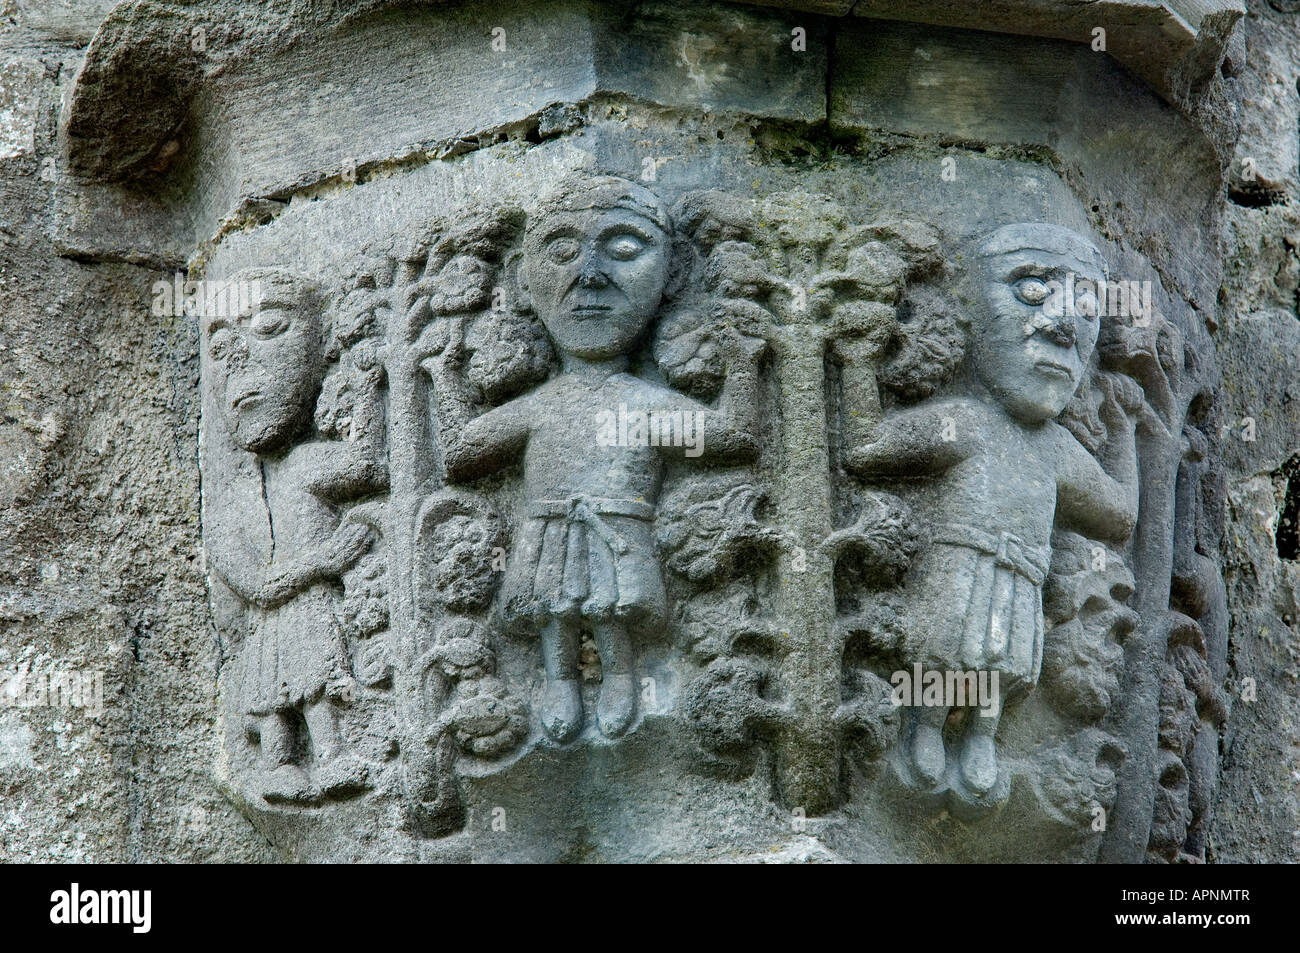 Abbazia di Boyle, nella contea di Roscommon, Irlanda. Fondata dai monaci cistercensi nel 1161. Stone carving dettaglio sul pilastro capitale. Foto Stock